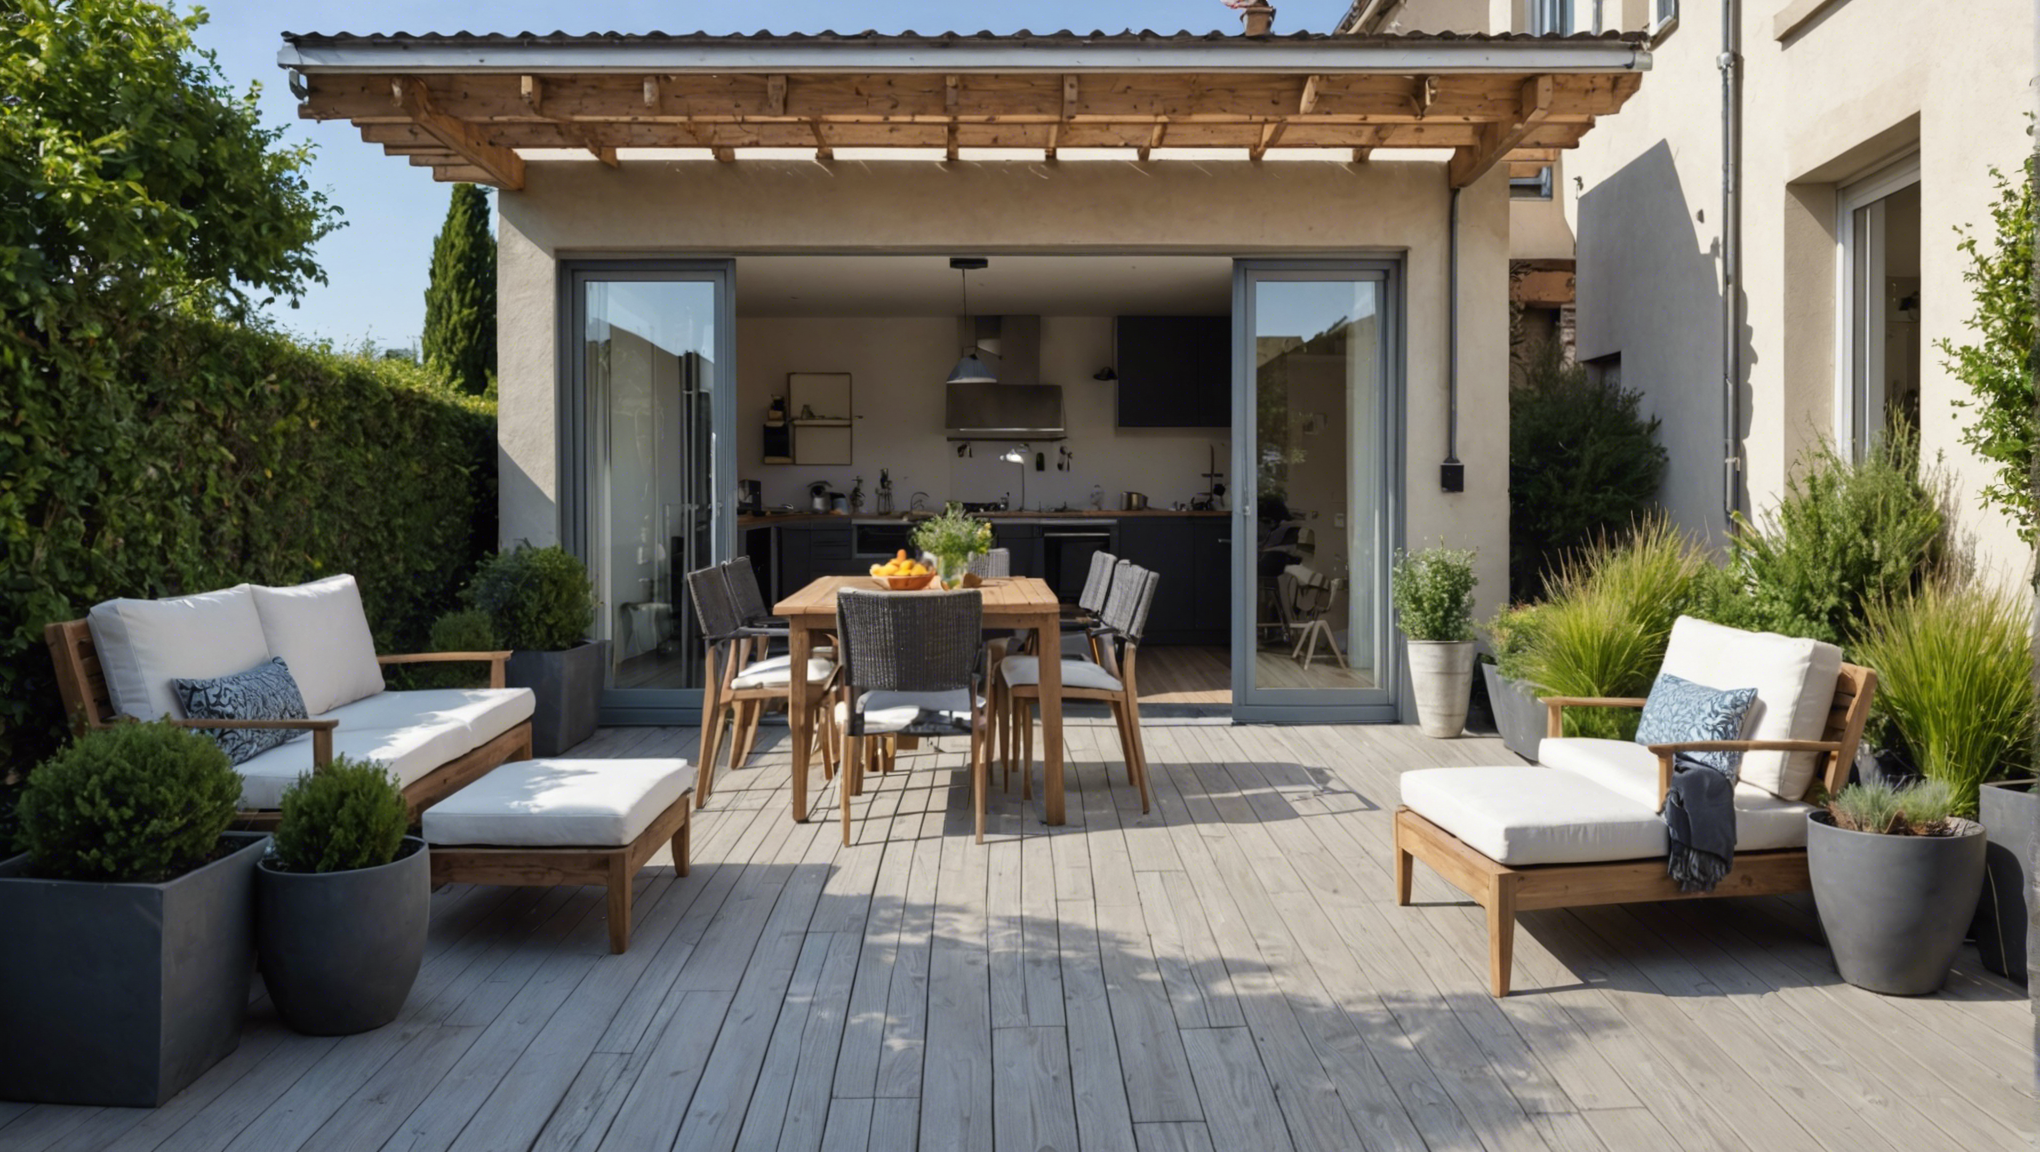 découvrez nos conseils pour aménager une terrasse devant votre maison et profiter d'un espace extérieur convivial et agréable.